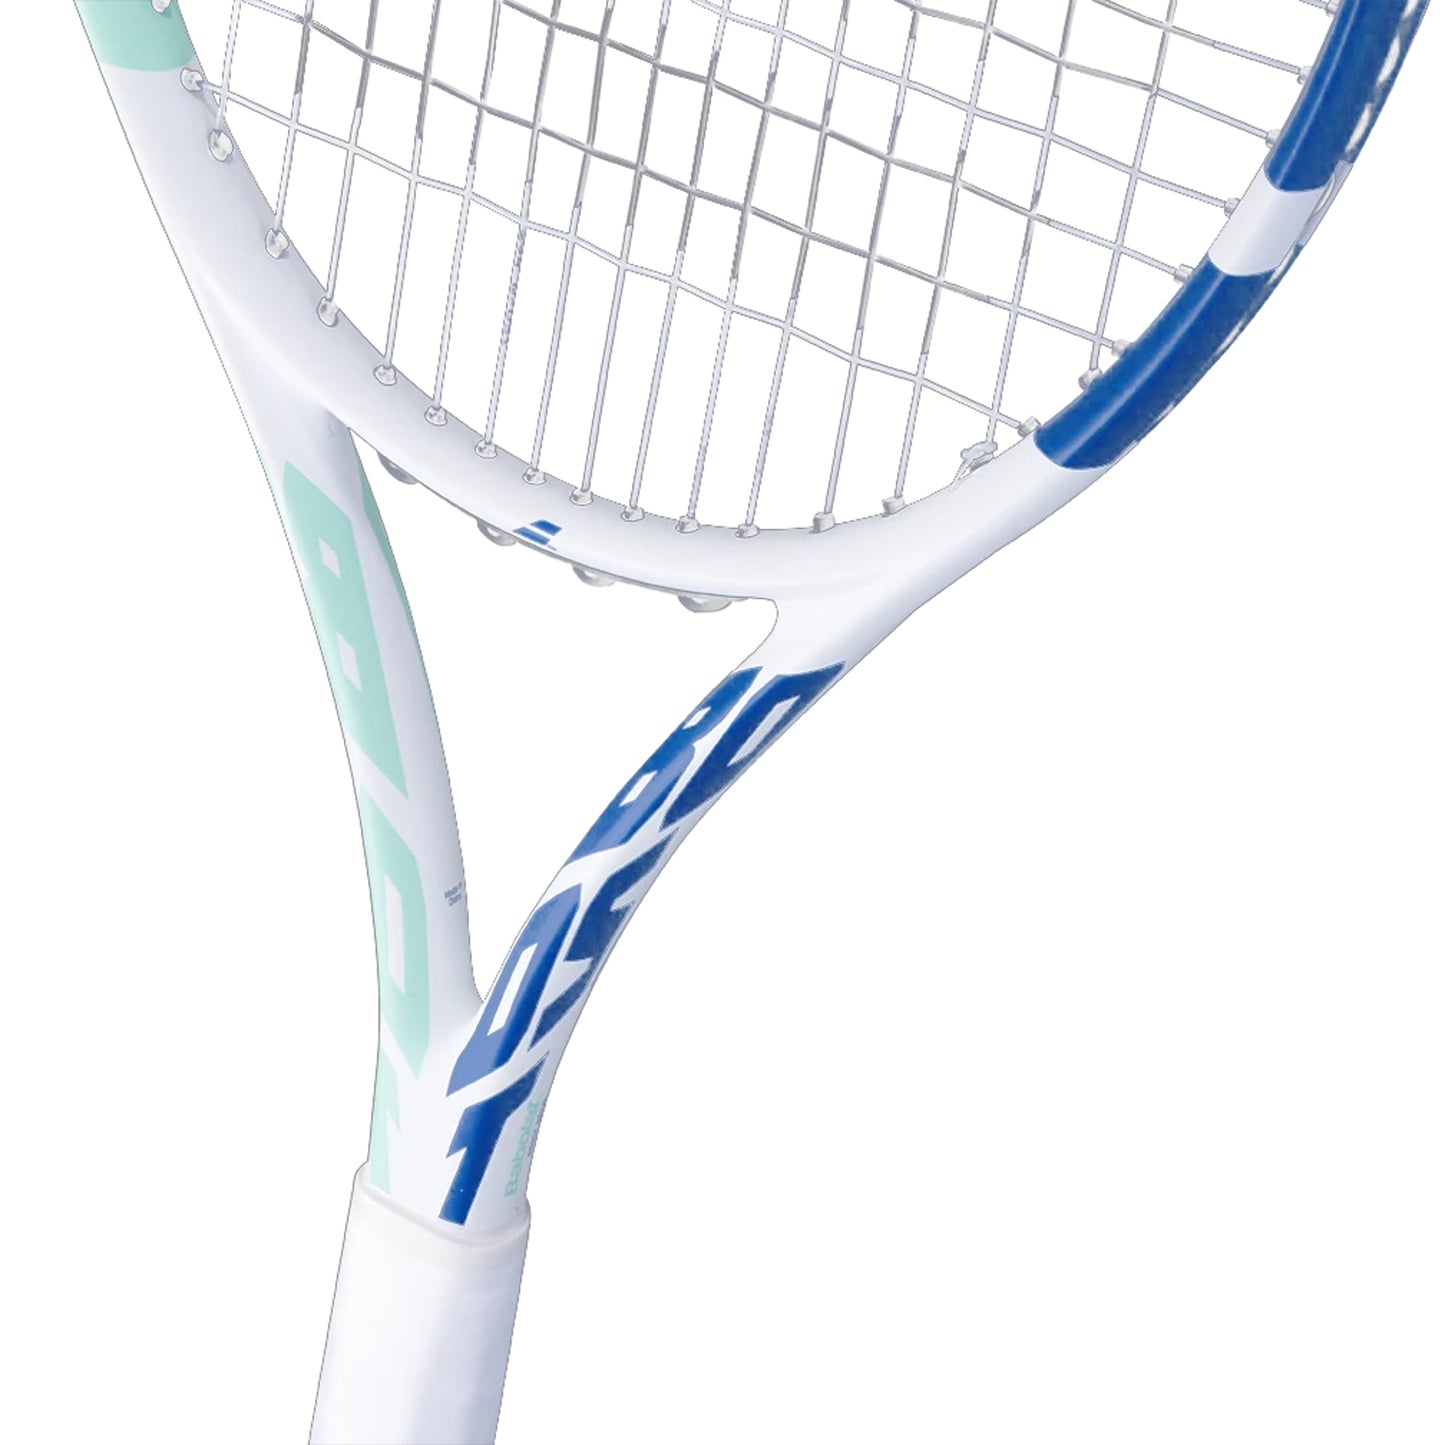 Babolat 121224 BOOST DRIVE STRUNG Tennis Racquet 4 3/8, White/Blue/Green - Best Price online Prokicksports.com